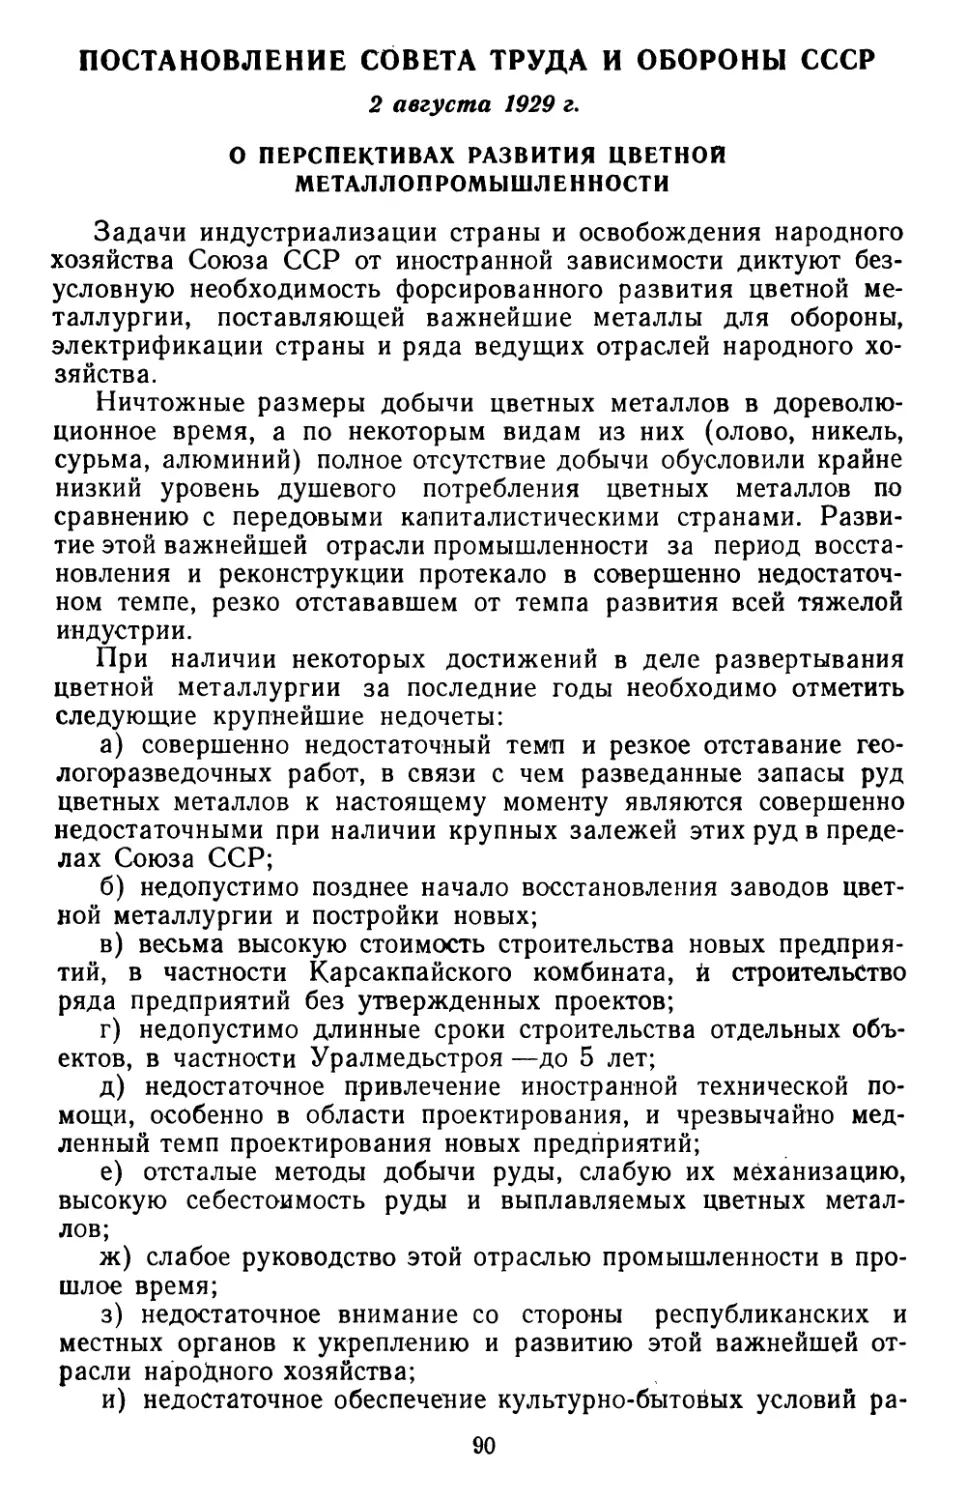 Постановление Совета Труда и Обороны СССР, 2 августа 1929 г. О перспективах развития цветной металлопромышленности